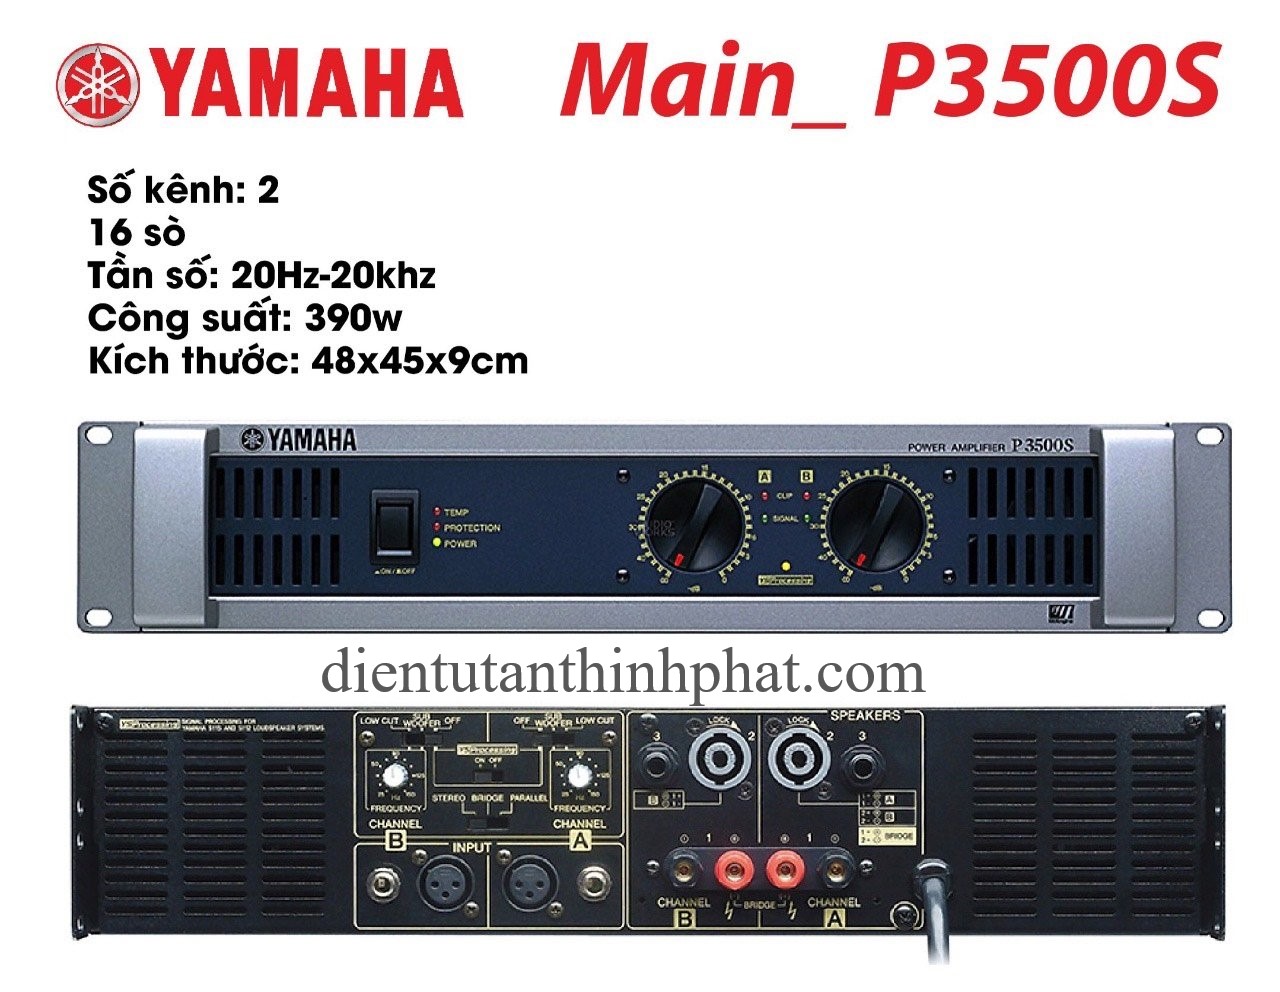 Bộ đẩy công suất yamaha P3500S 16 sò